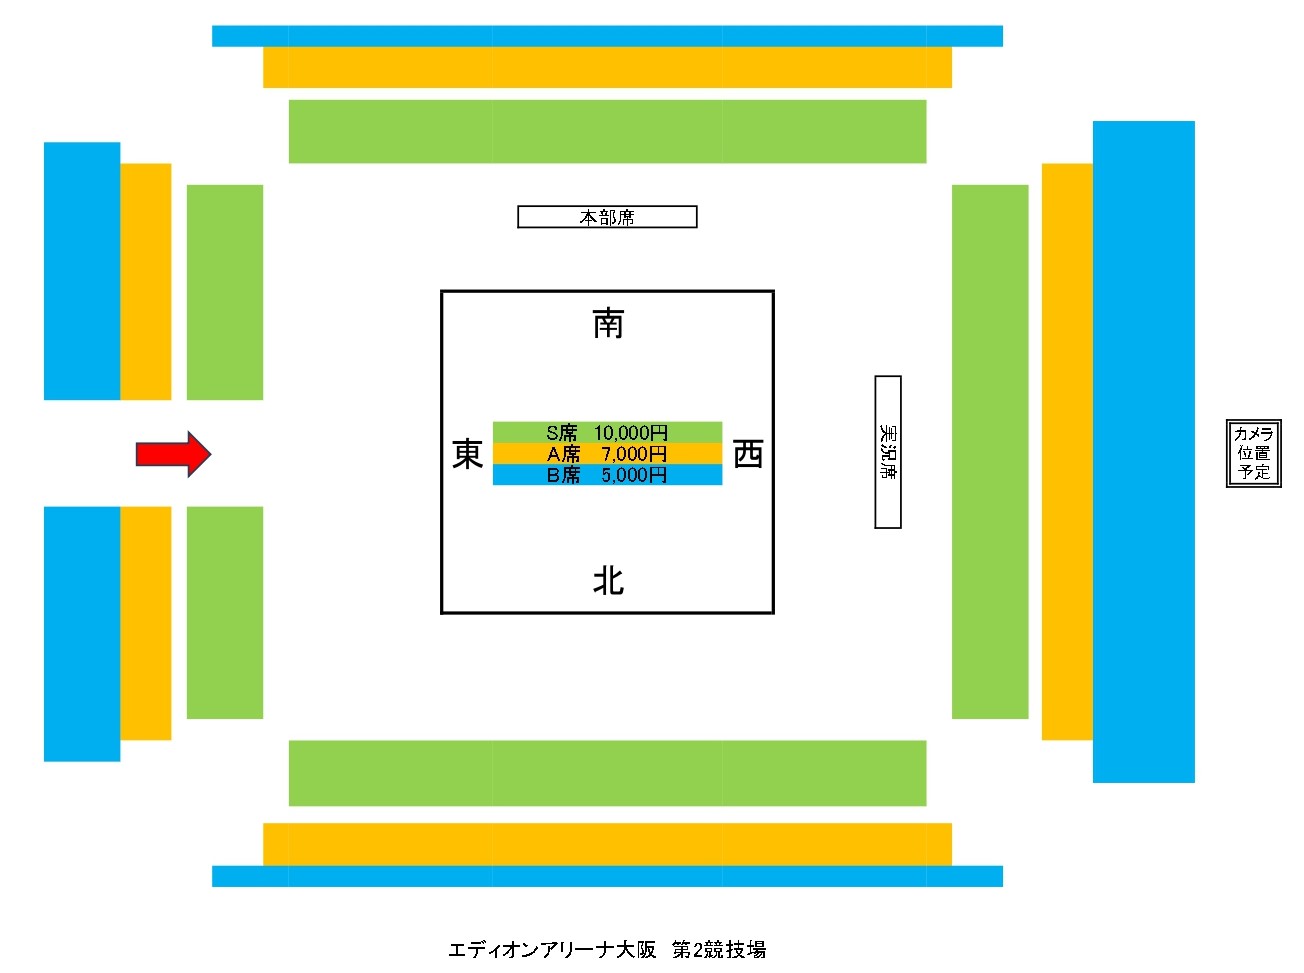 1月28日・エディオンアリーナ大阪第2競技場大会 座席図面